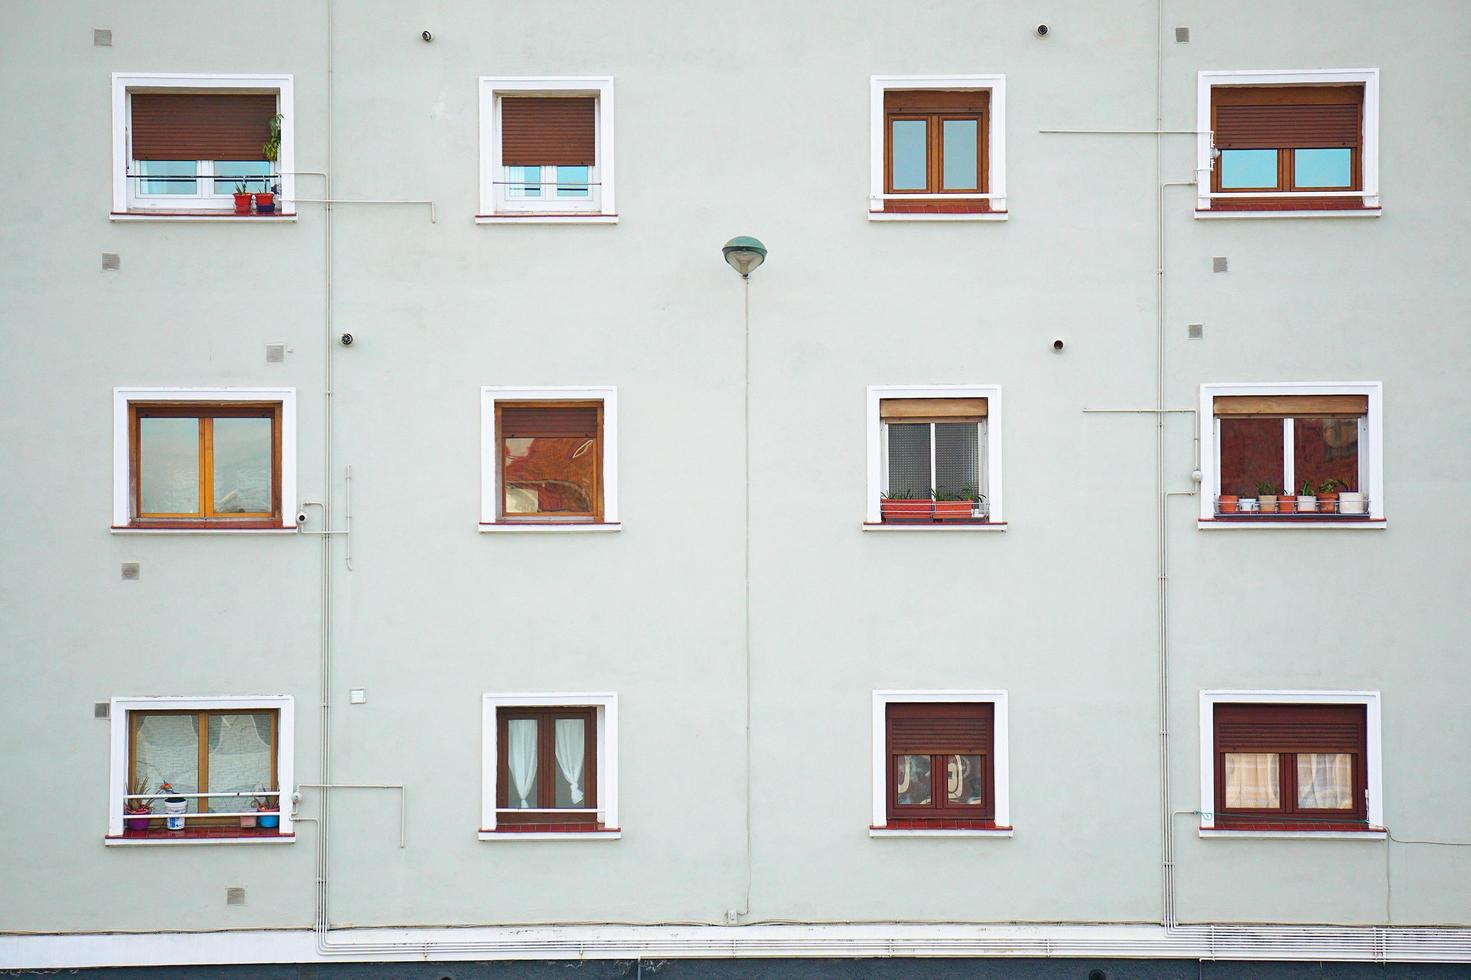 Fenster an der weißen Fassade des Hauses in Bilbao, Spanien foto